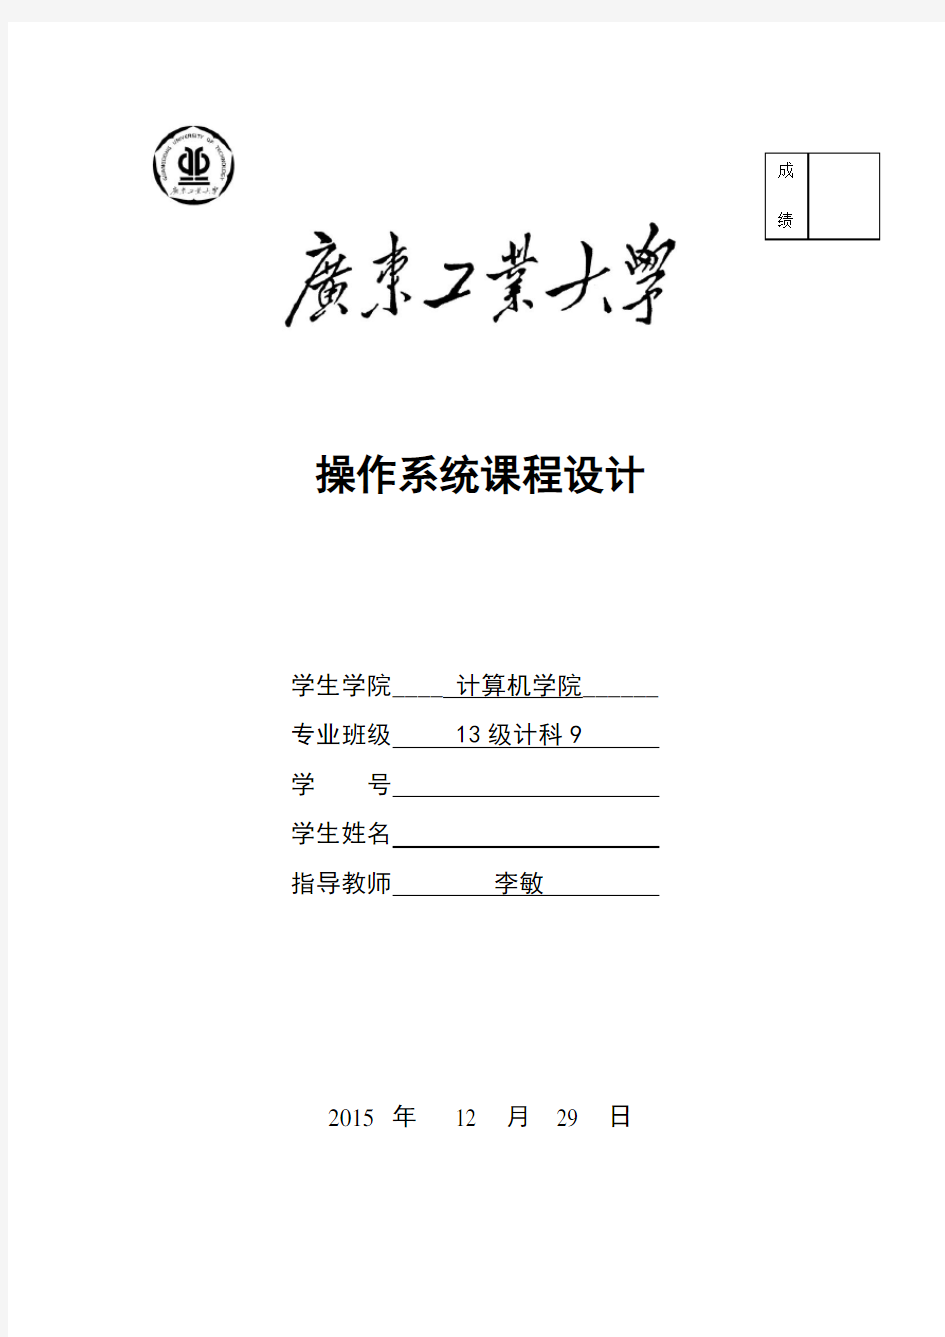 2015广工操作系统课程设计报告(文档最后含源码下载地址)